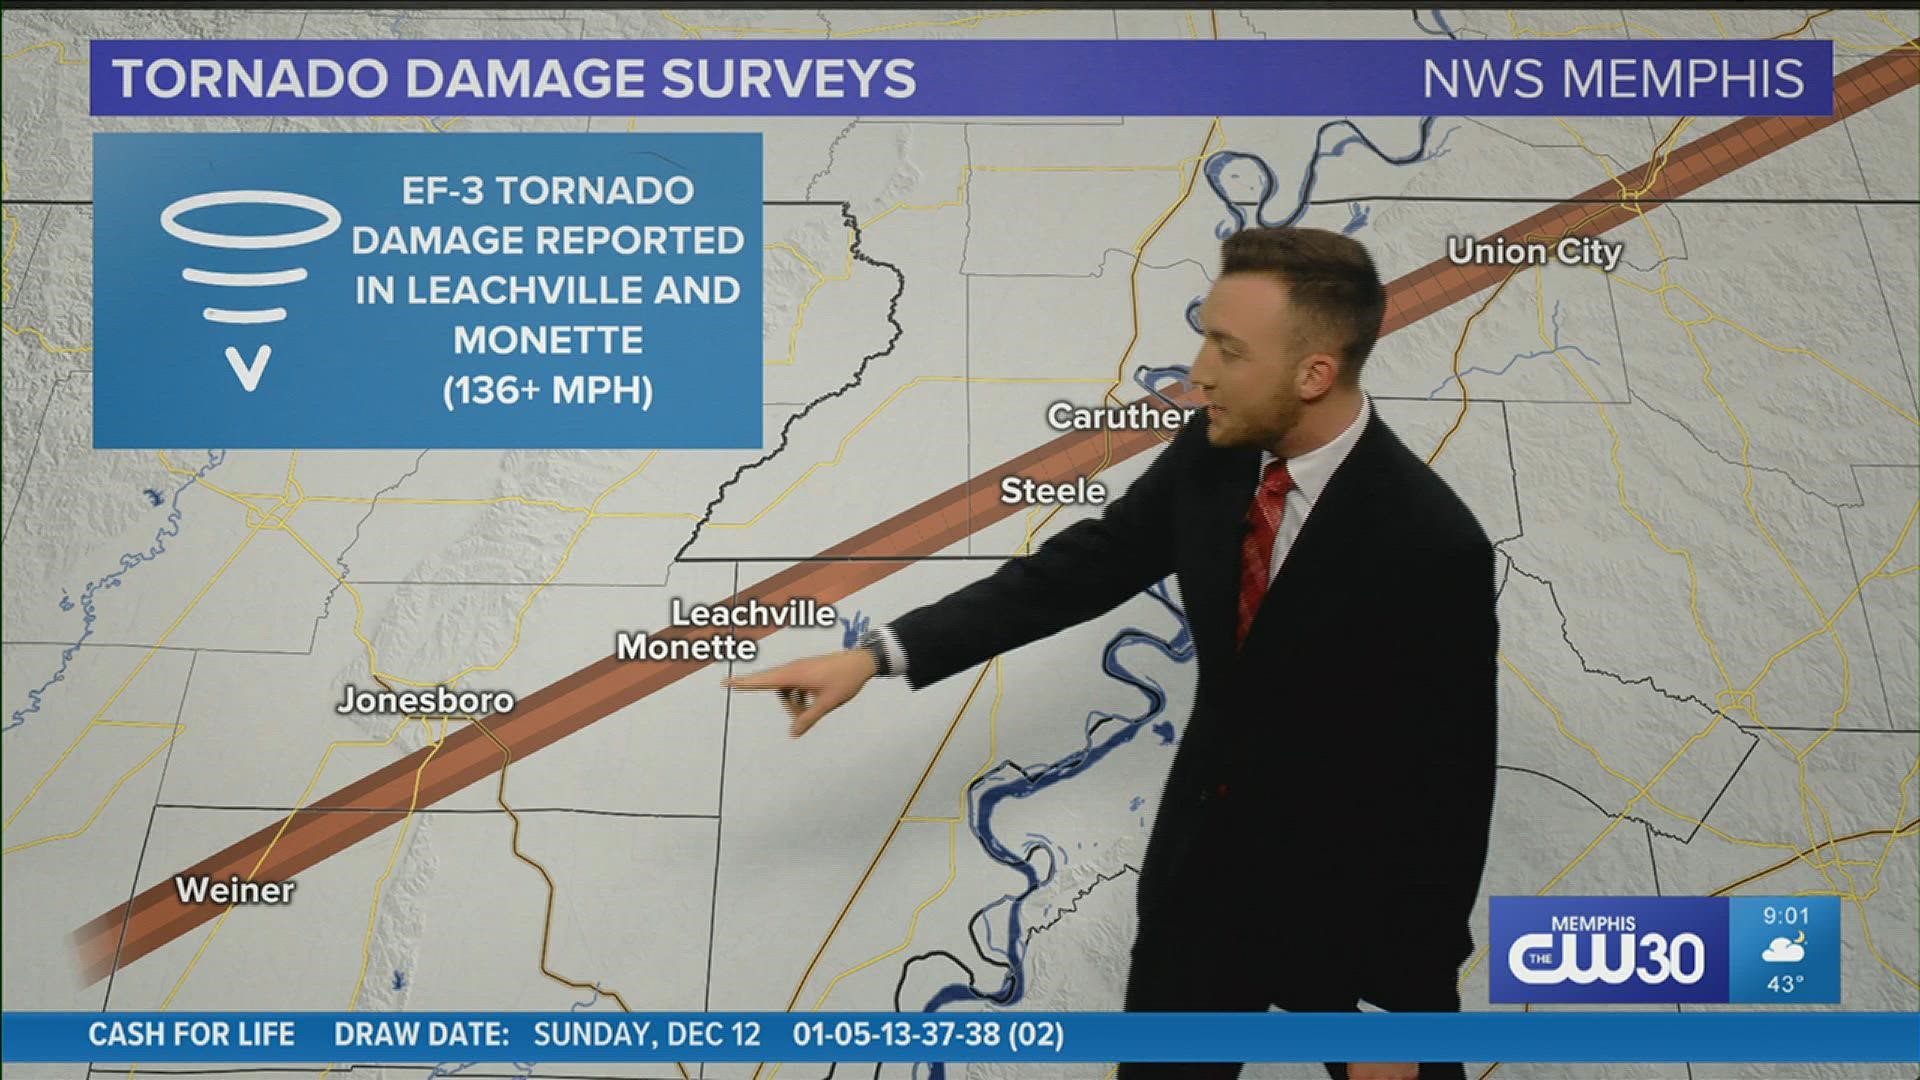 The worst damage was found in Northeastern Arkansas and Northwest Tennessee